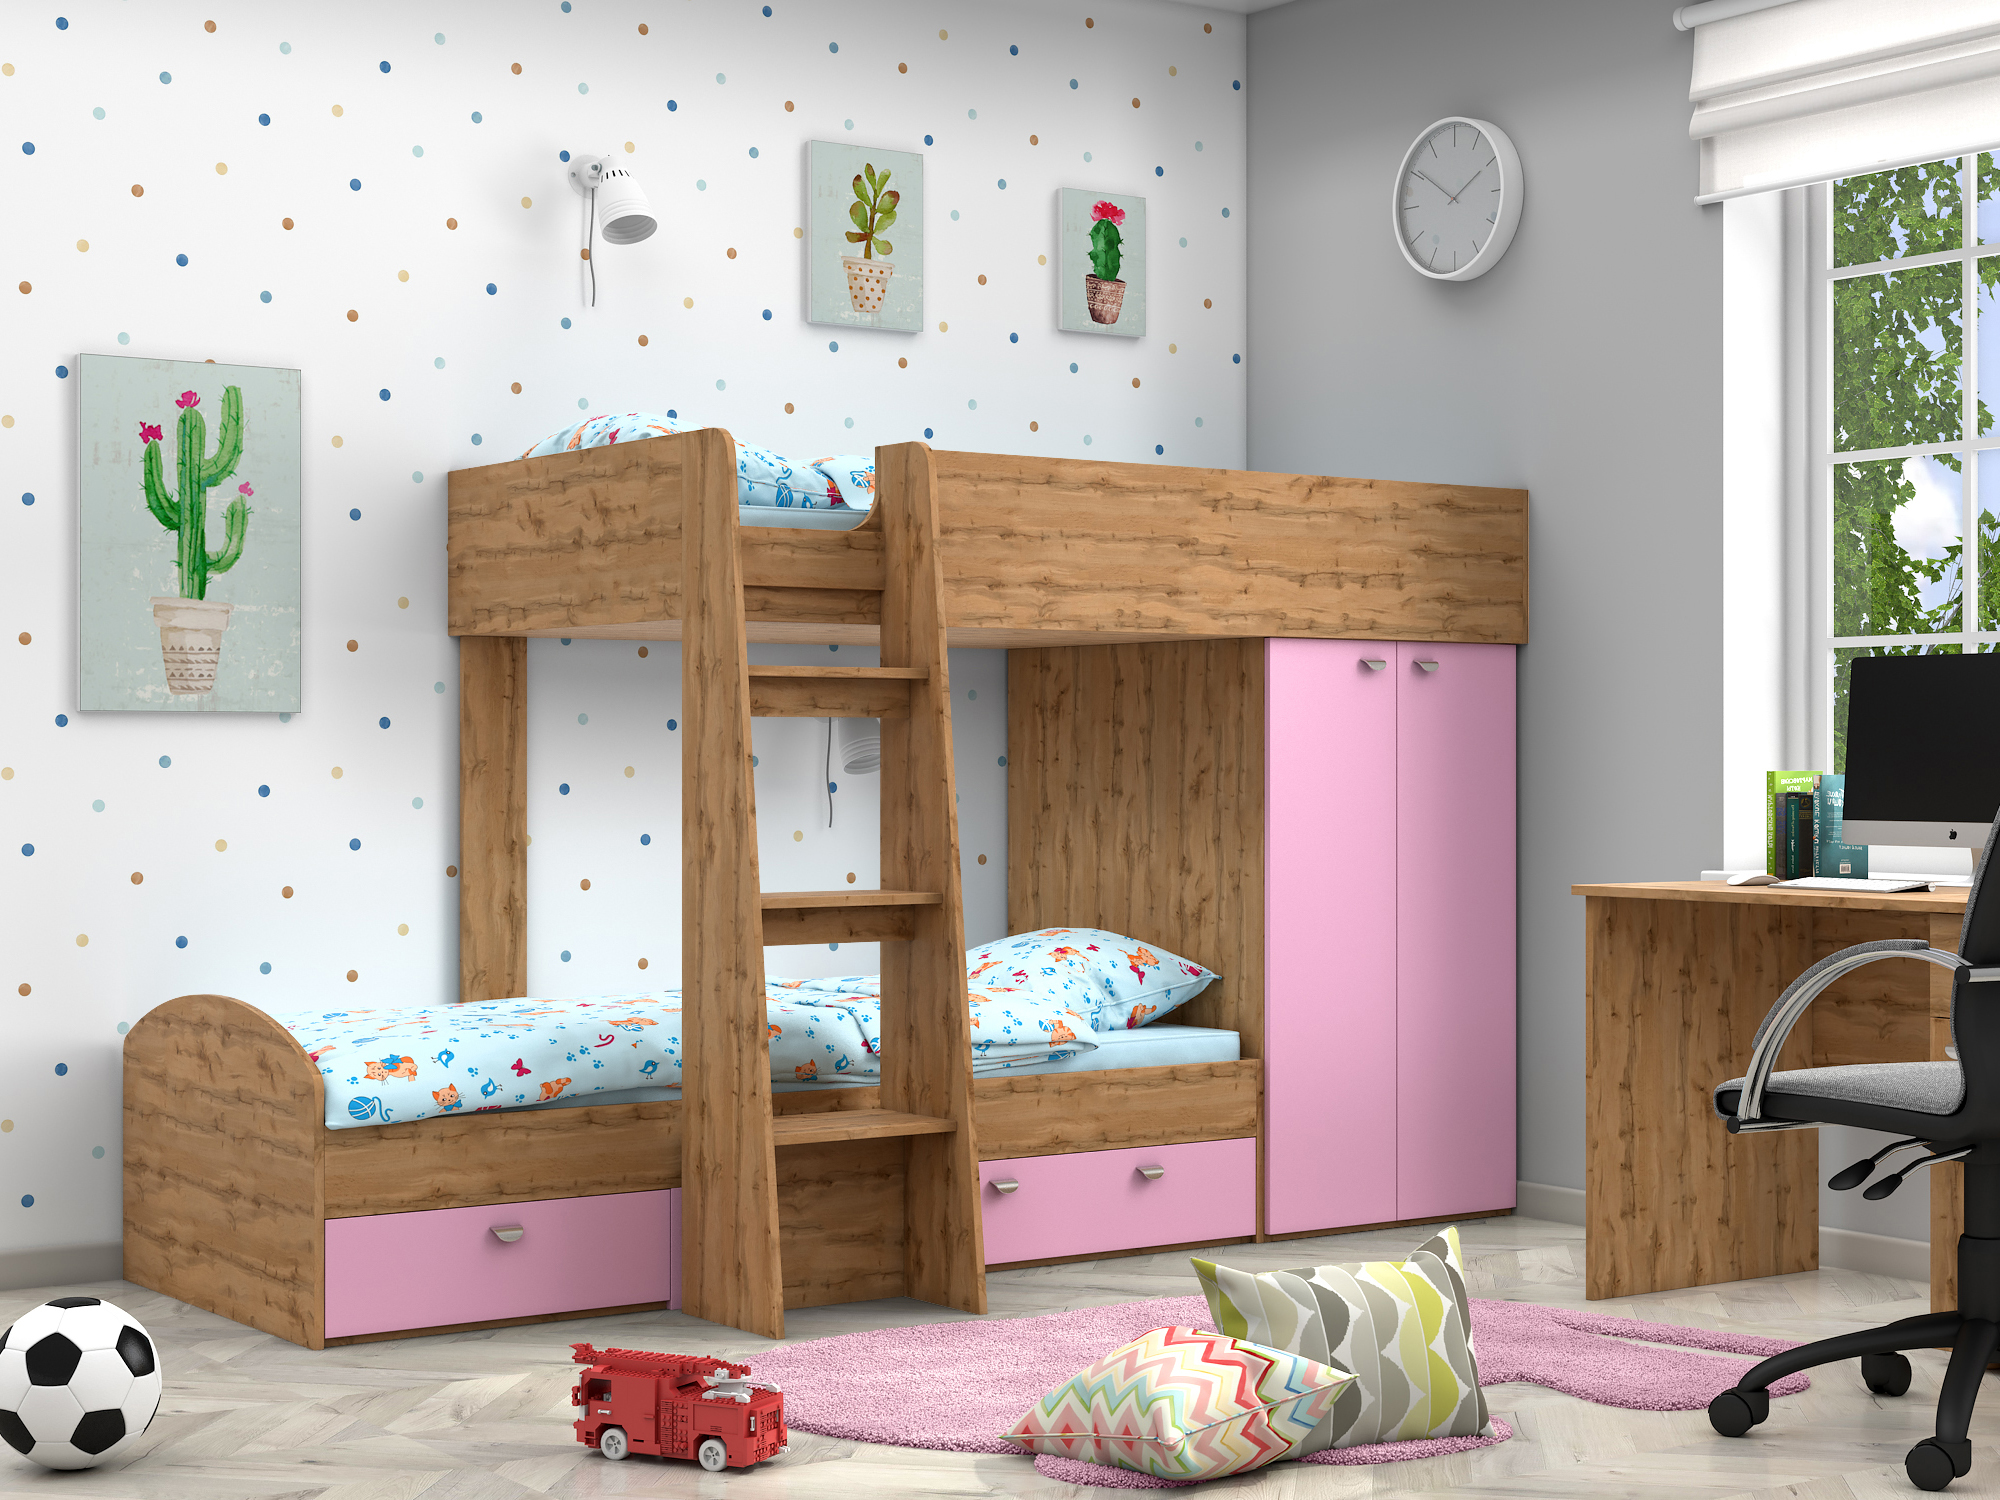 Двухъярусная кровать Golden Kids-2 (90х200) Розовый, Бежевый, ЛДСП двухъярусная кровать golden kids 2 90х200 венге коричневый темный бежевый лдсп